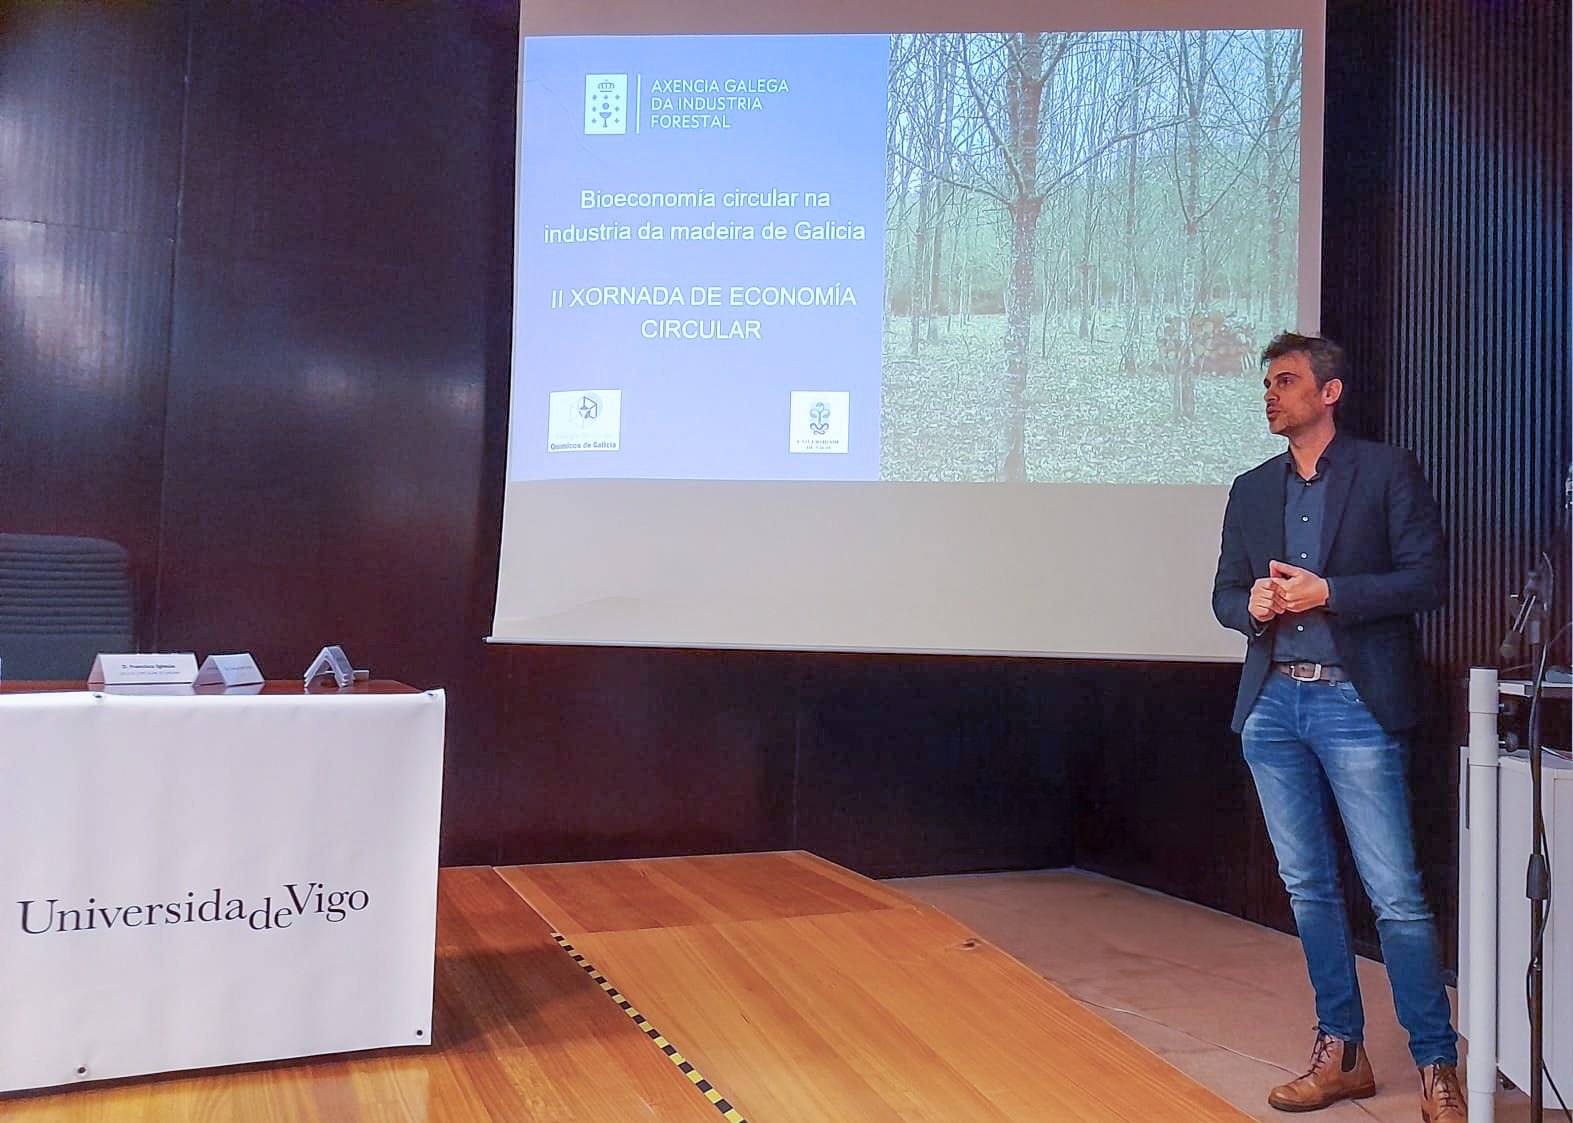 Presentación do director da Axencia Galega da Industria Forestal na Xornada de Economía Circular 